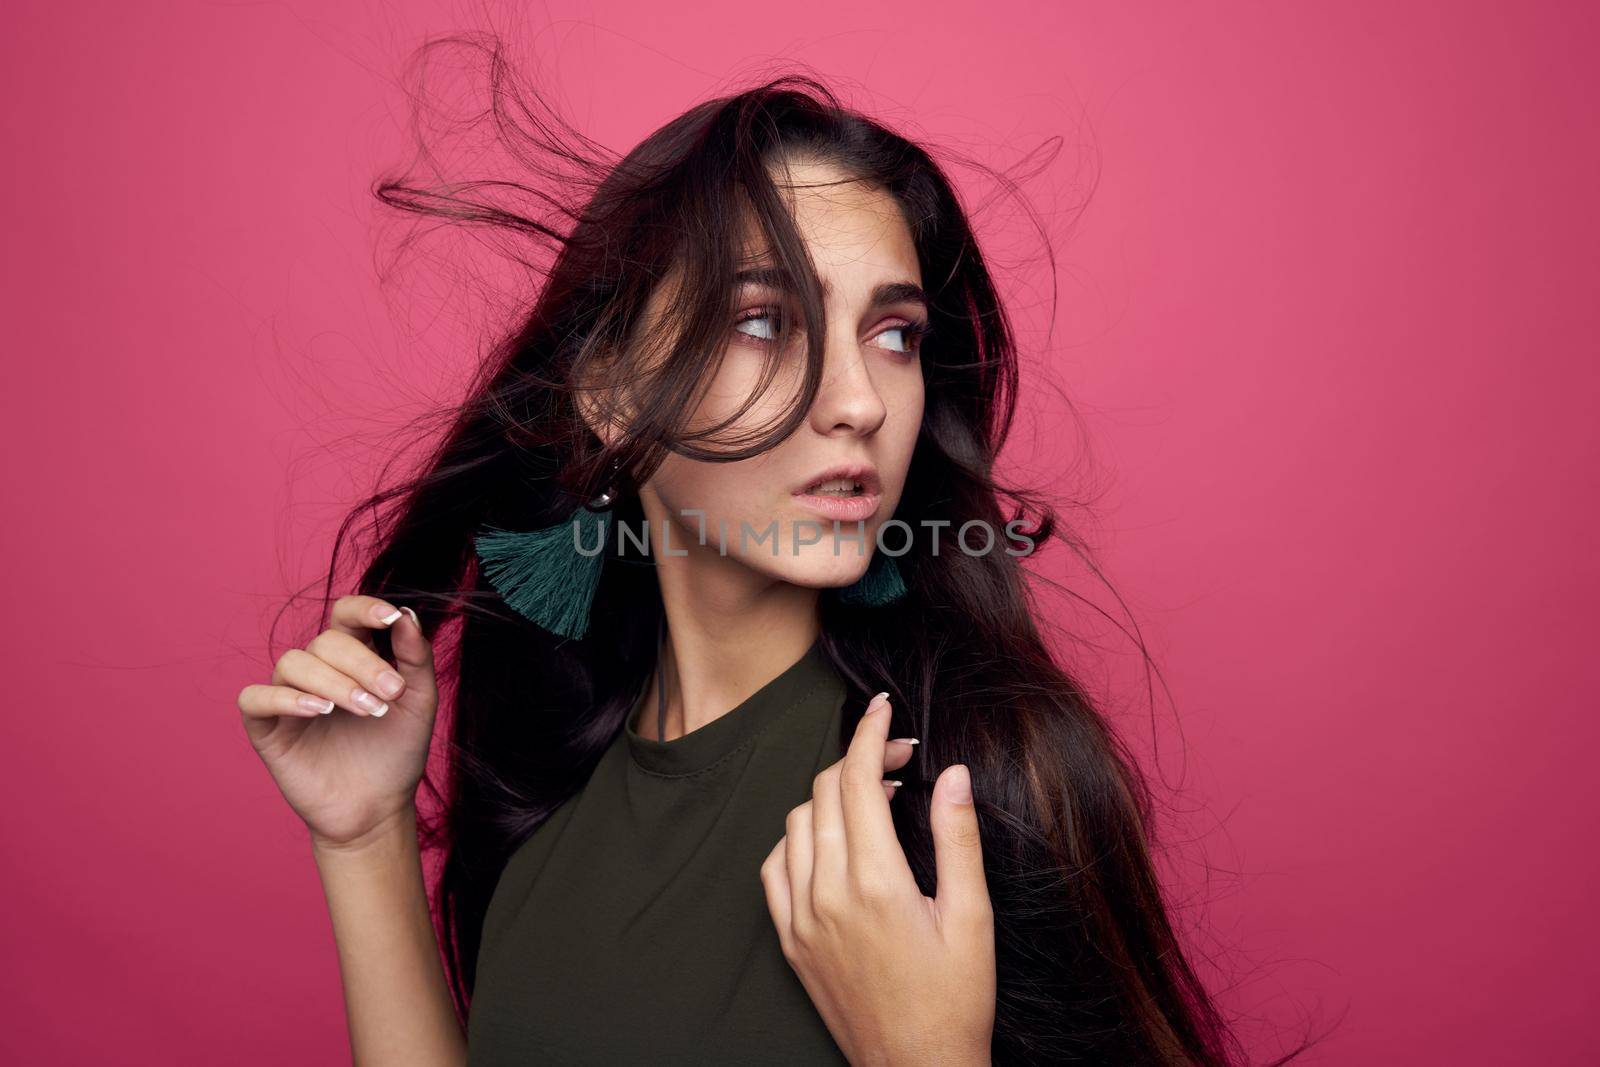 beautiful woman fashion clothing posing pink background by Vichizh